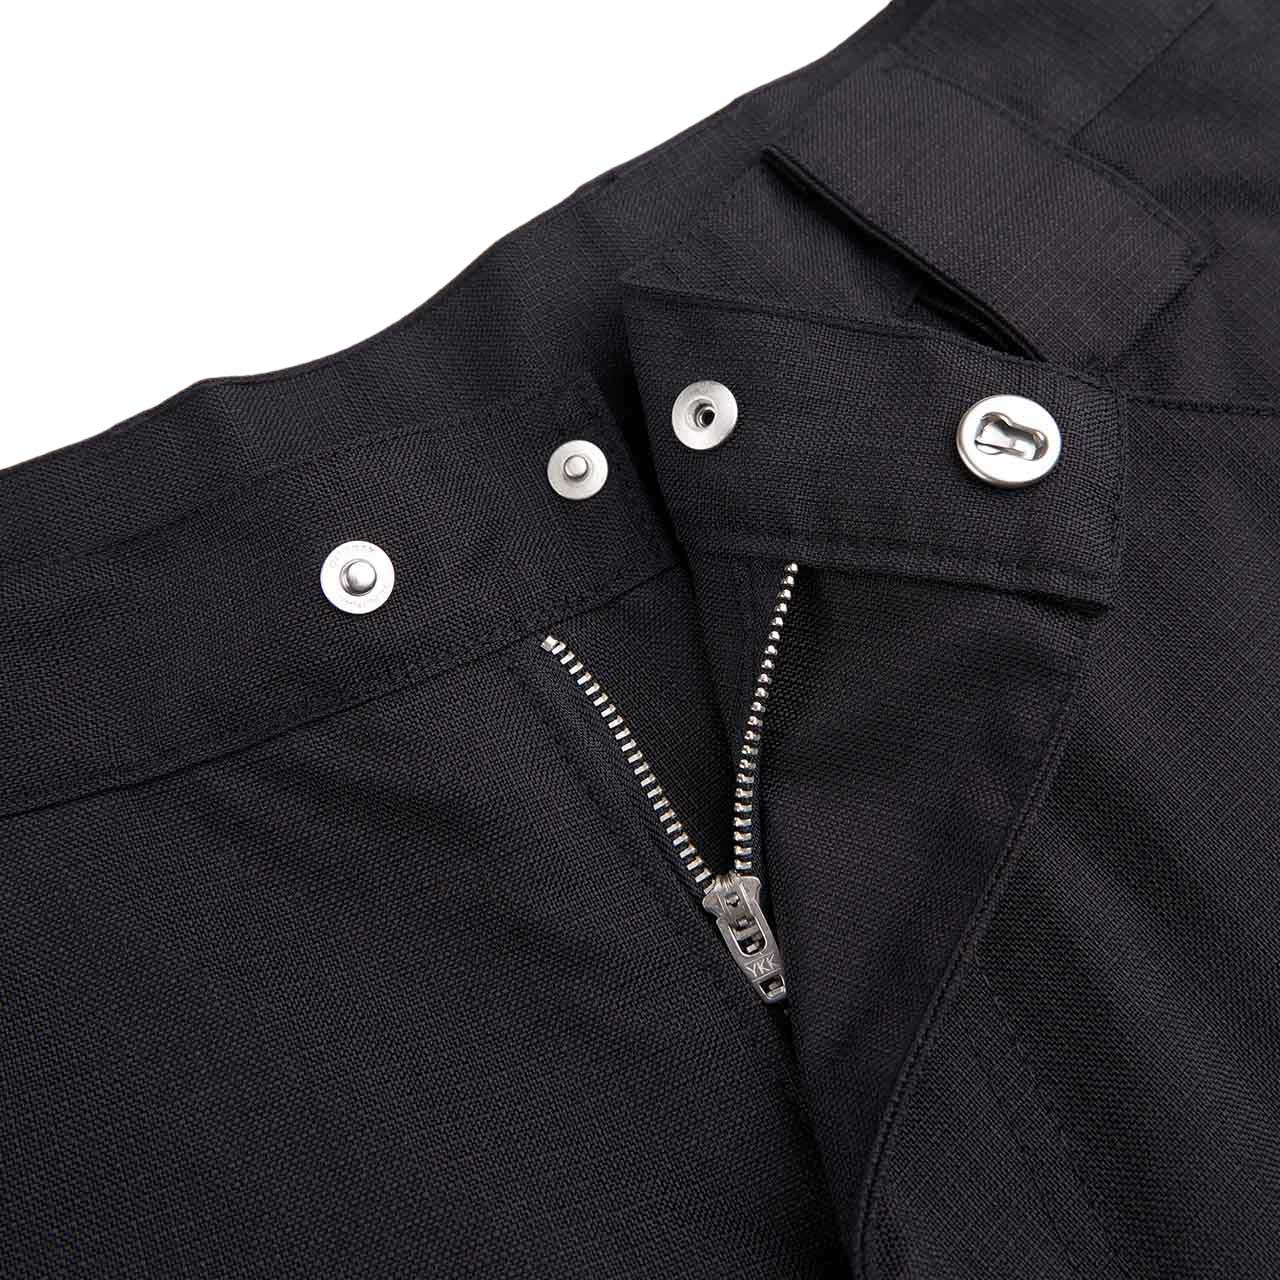 affxwrks panel pants (black/blue) FW22TR03 - a.plus